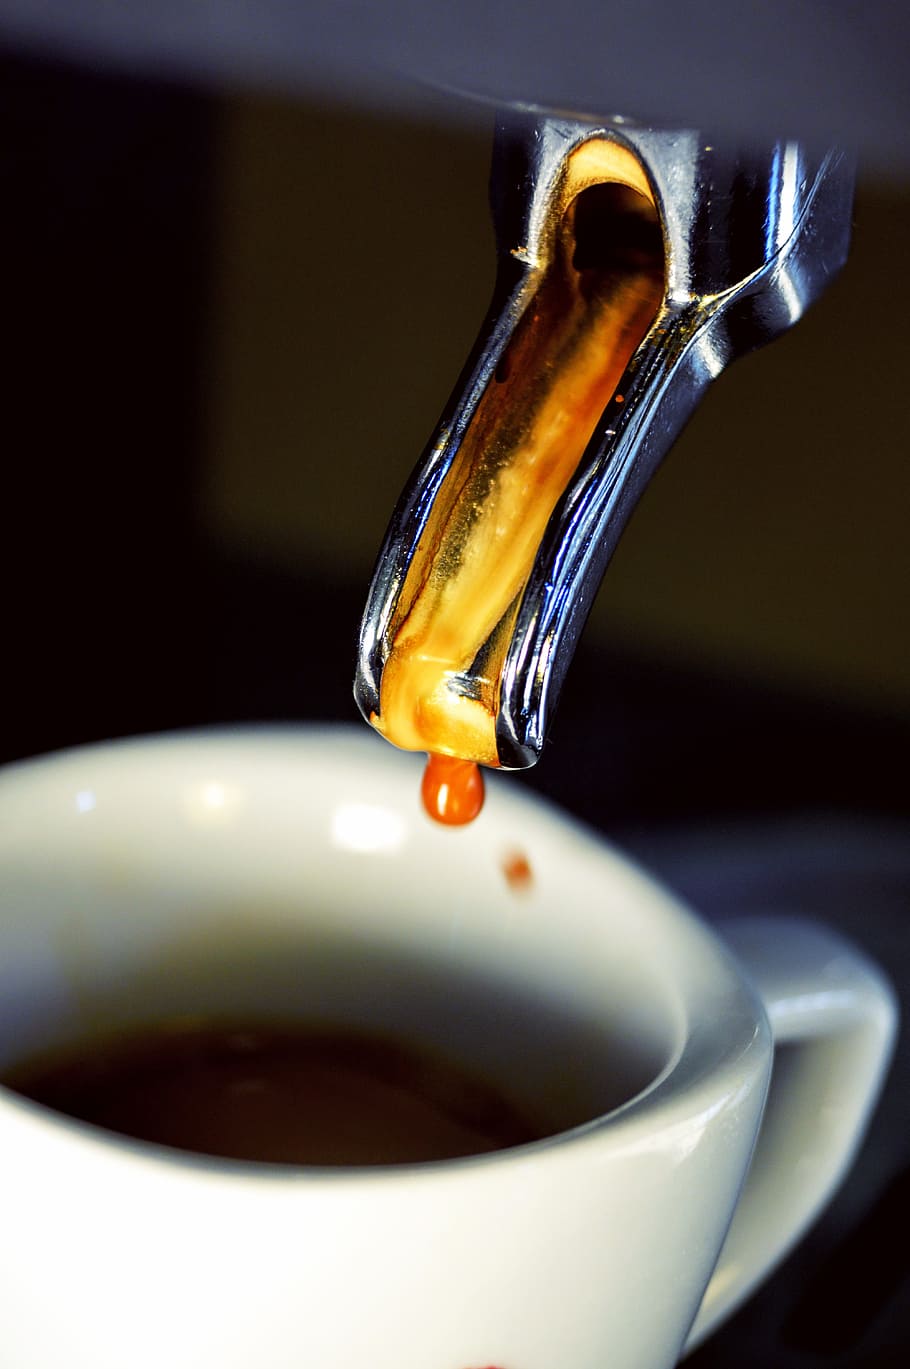 café exprés, café, máquina de café exprés, taza de café, portafiltro, cafeína de portafiltro espresso, negro, taza, preparación, caliente